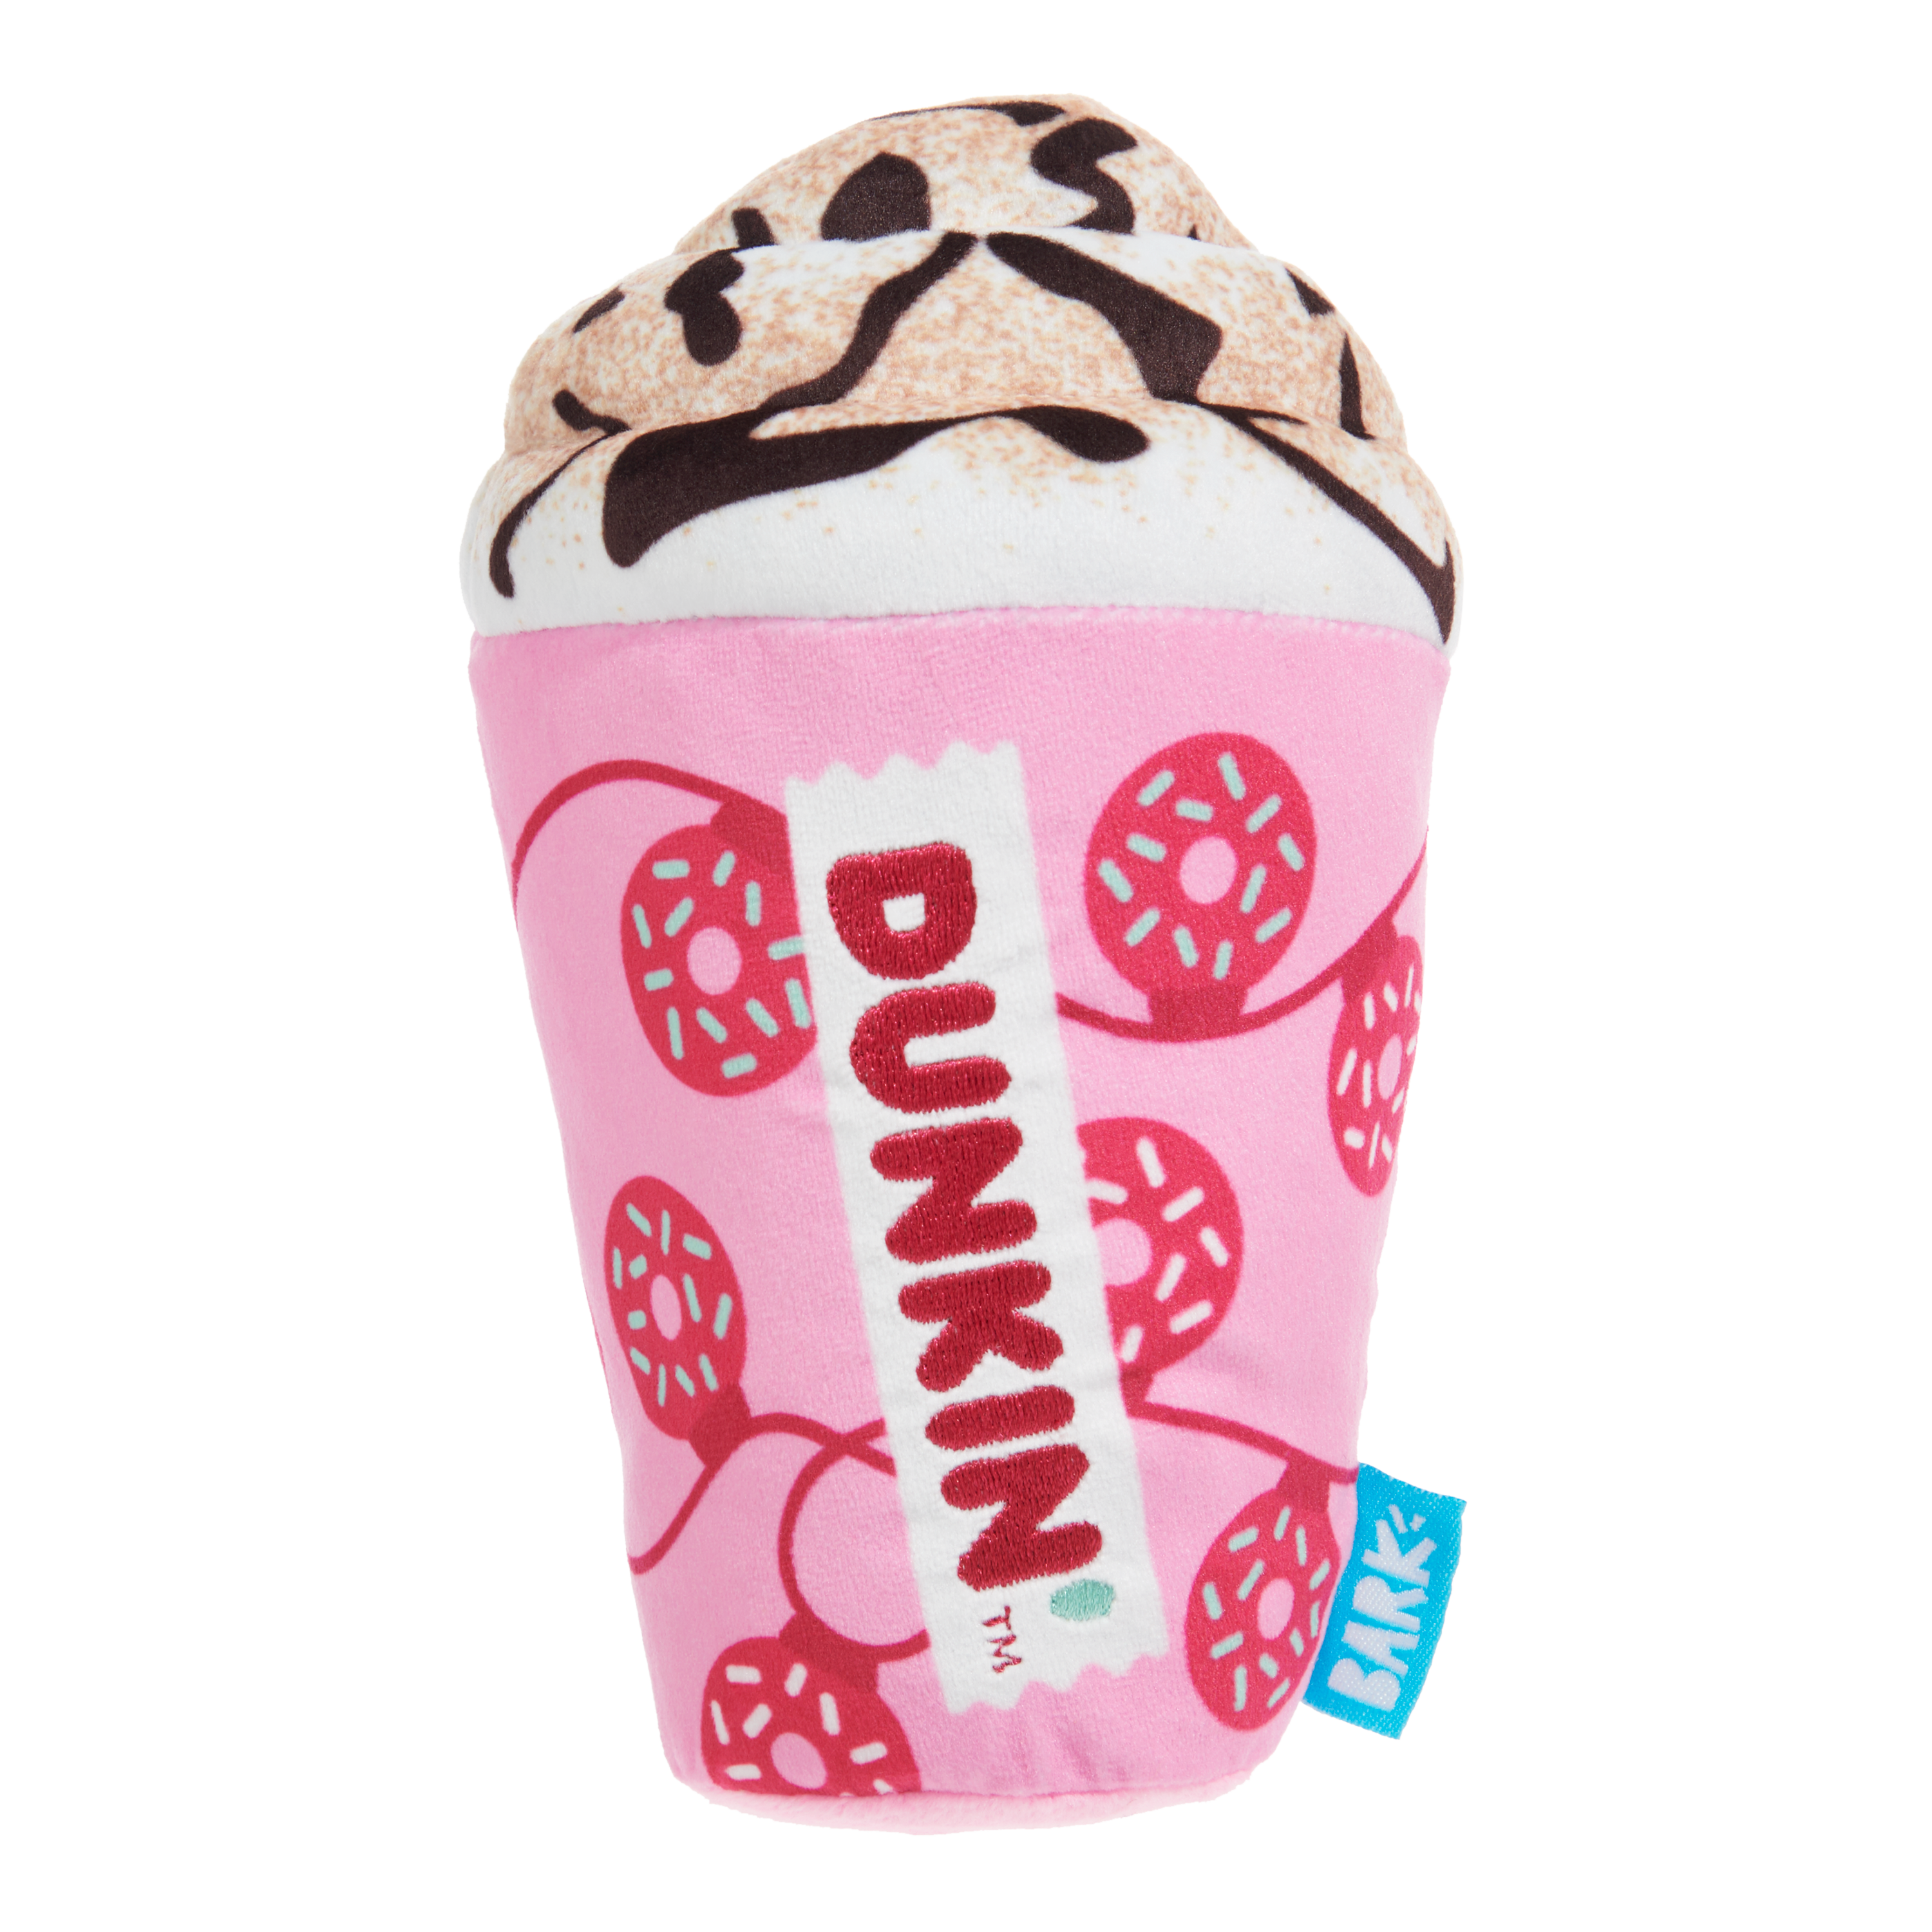 Dunkin'® Mocha Latte Toy